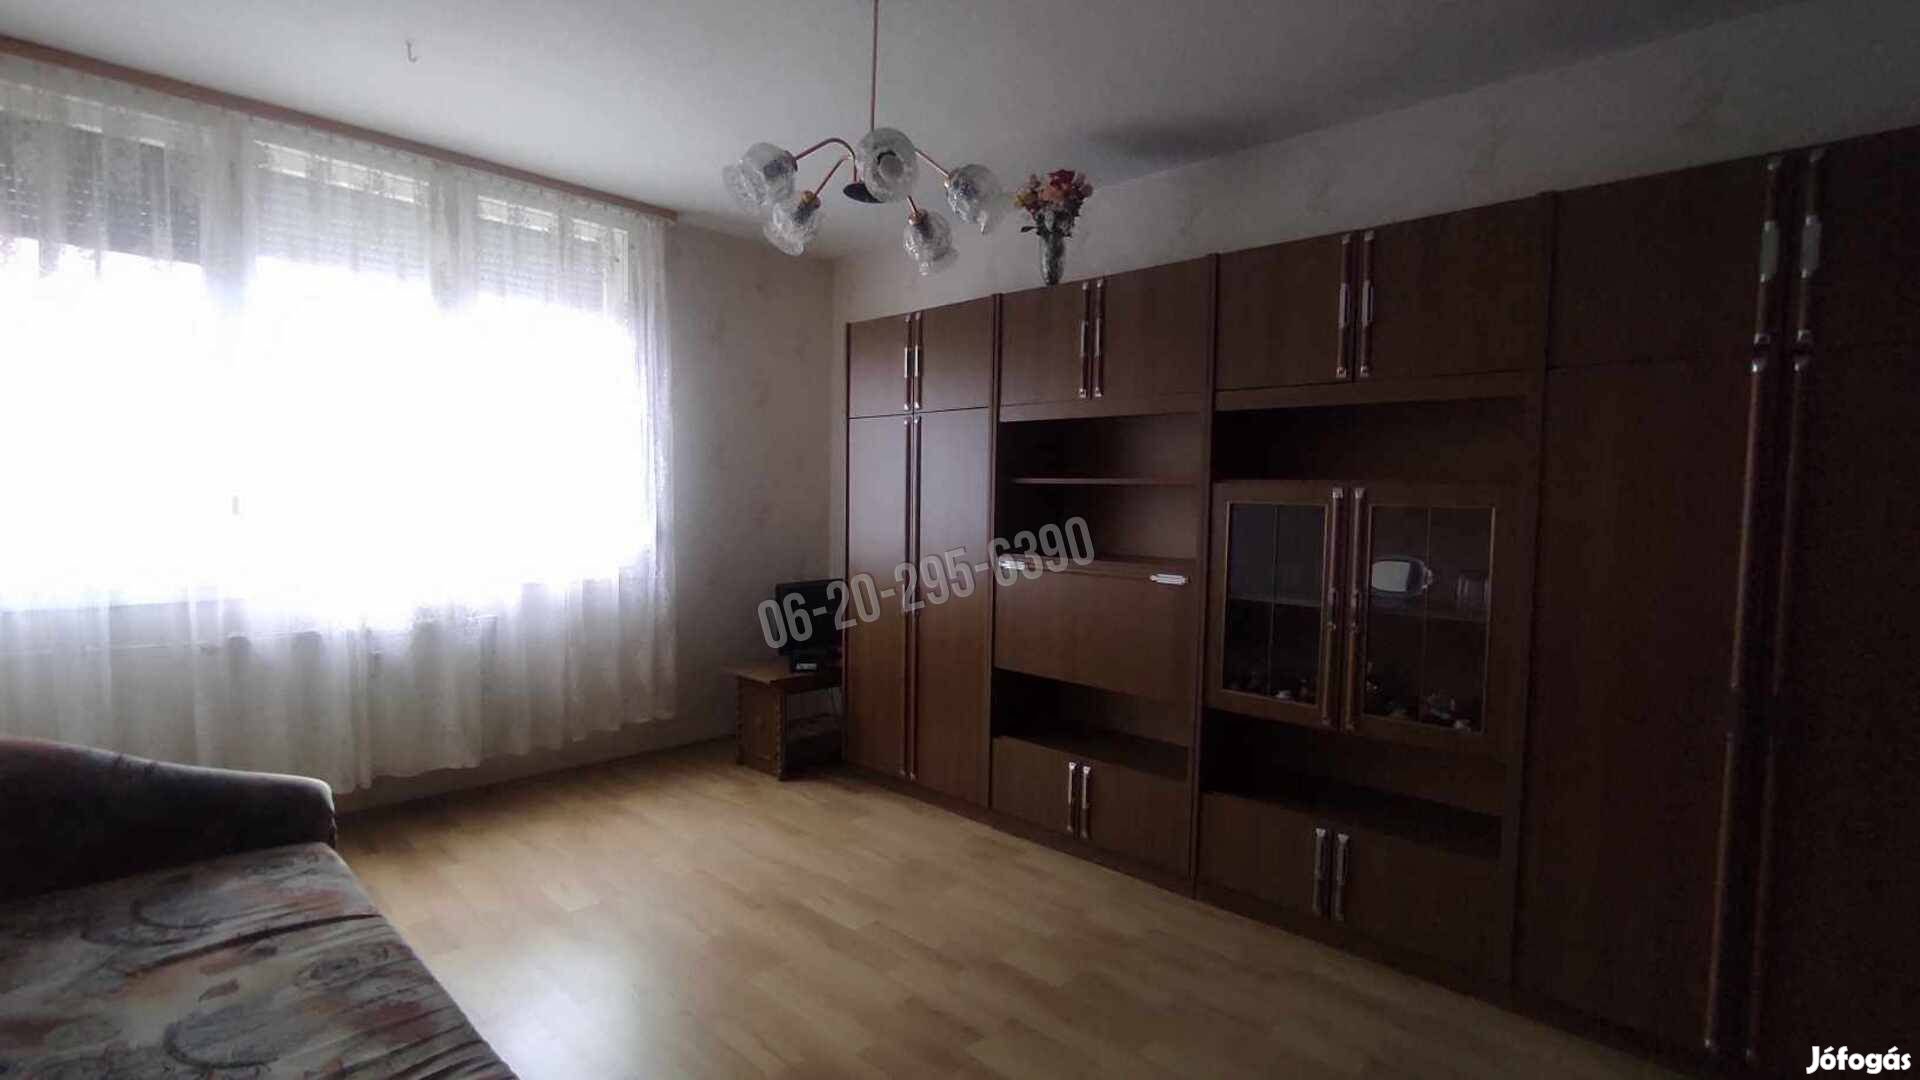 Eladó lakás, Dunaújváros Felső-Dunapart, Vigadó utca, 20500000 F 2_krt